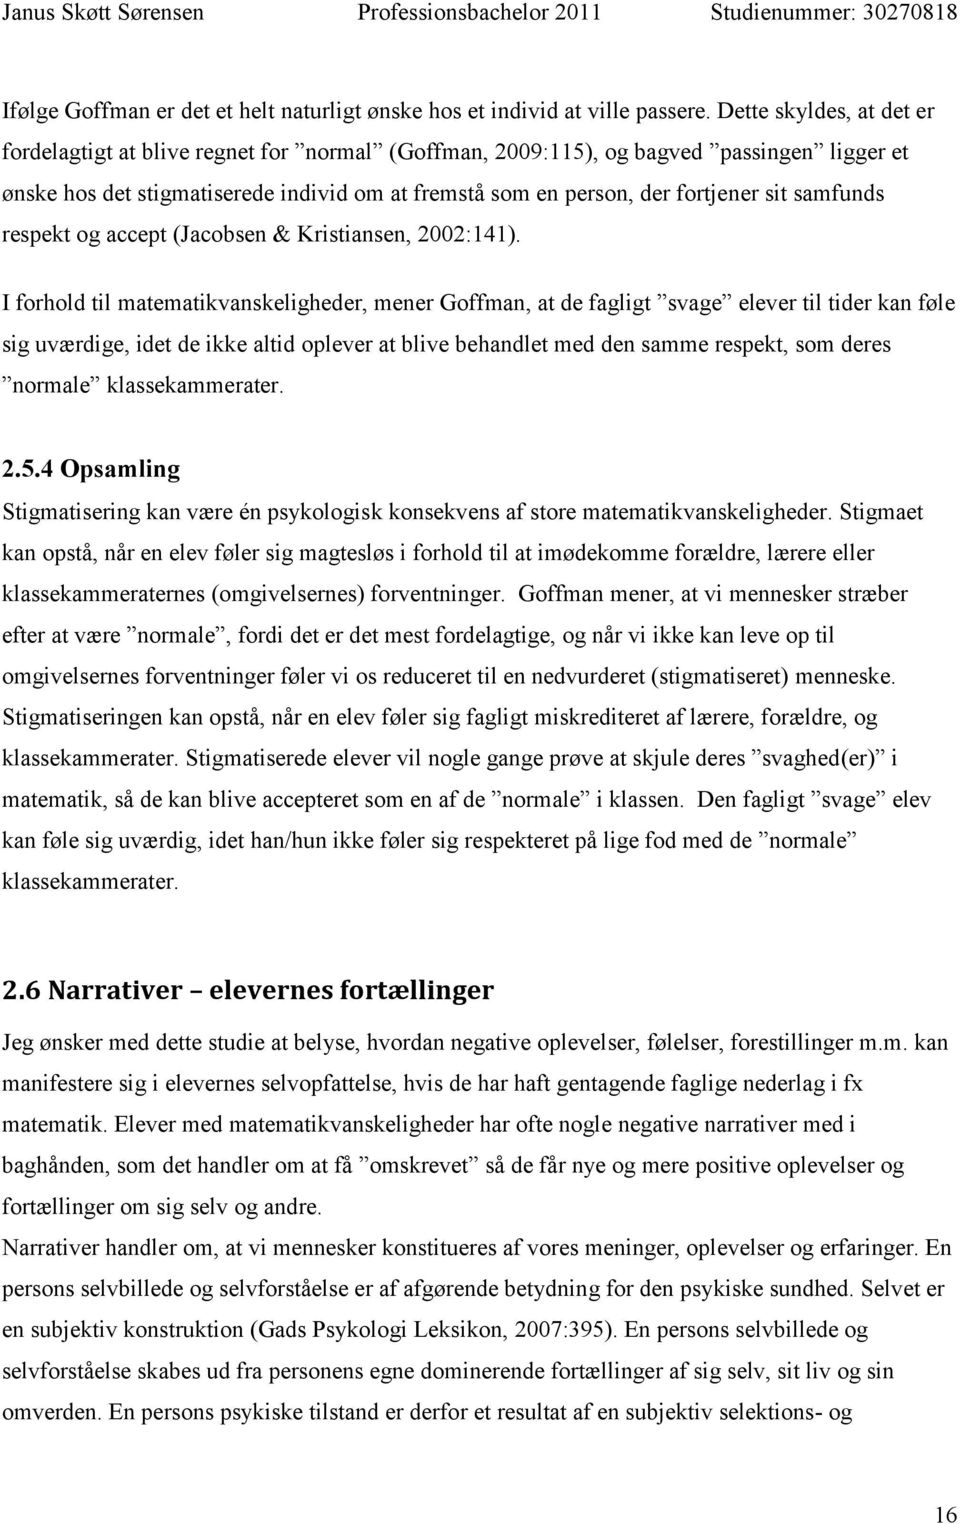 samfunds respekt og accept (Jacobsen & Kristiansen, 2002:141).